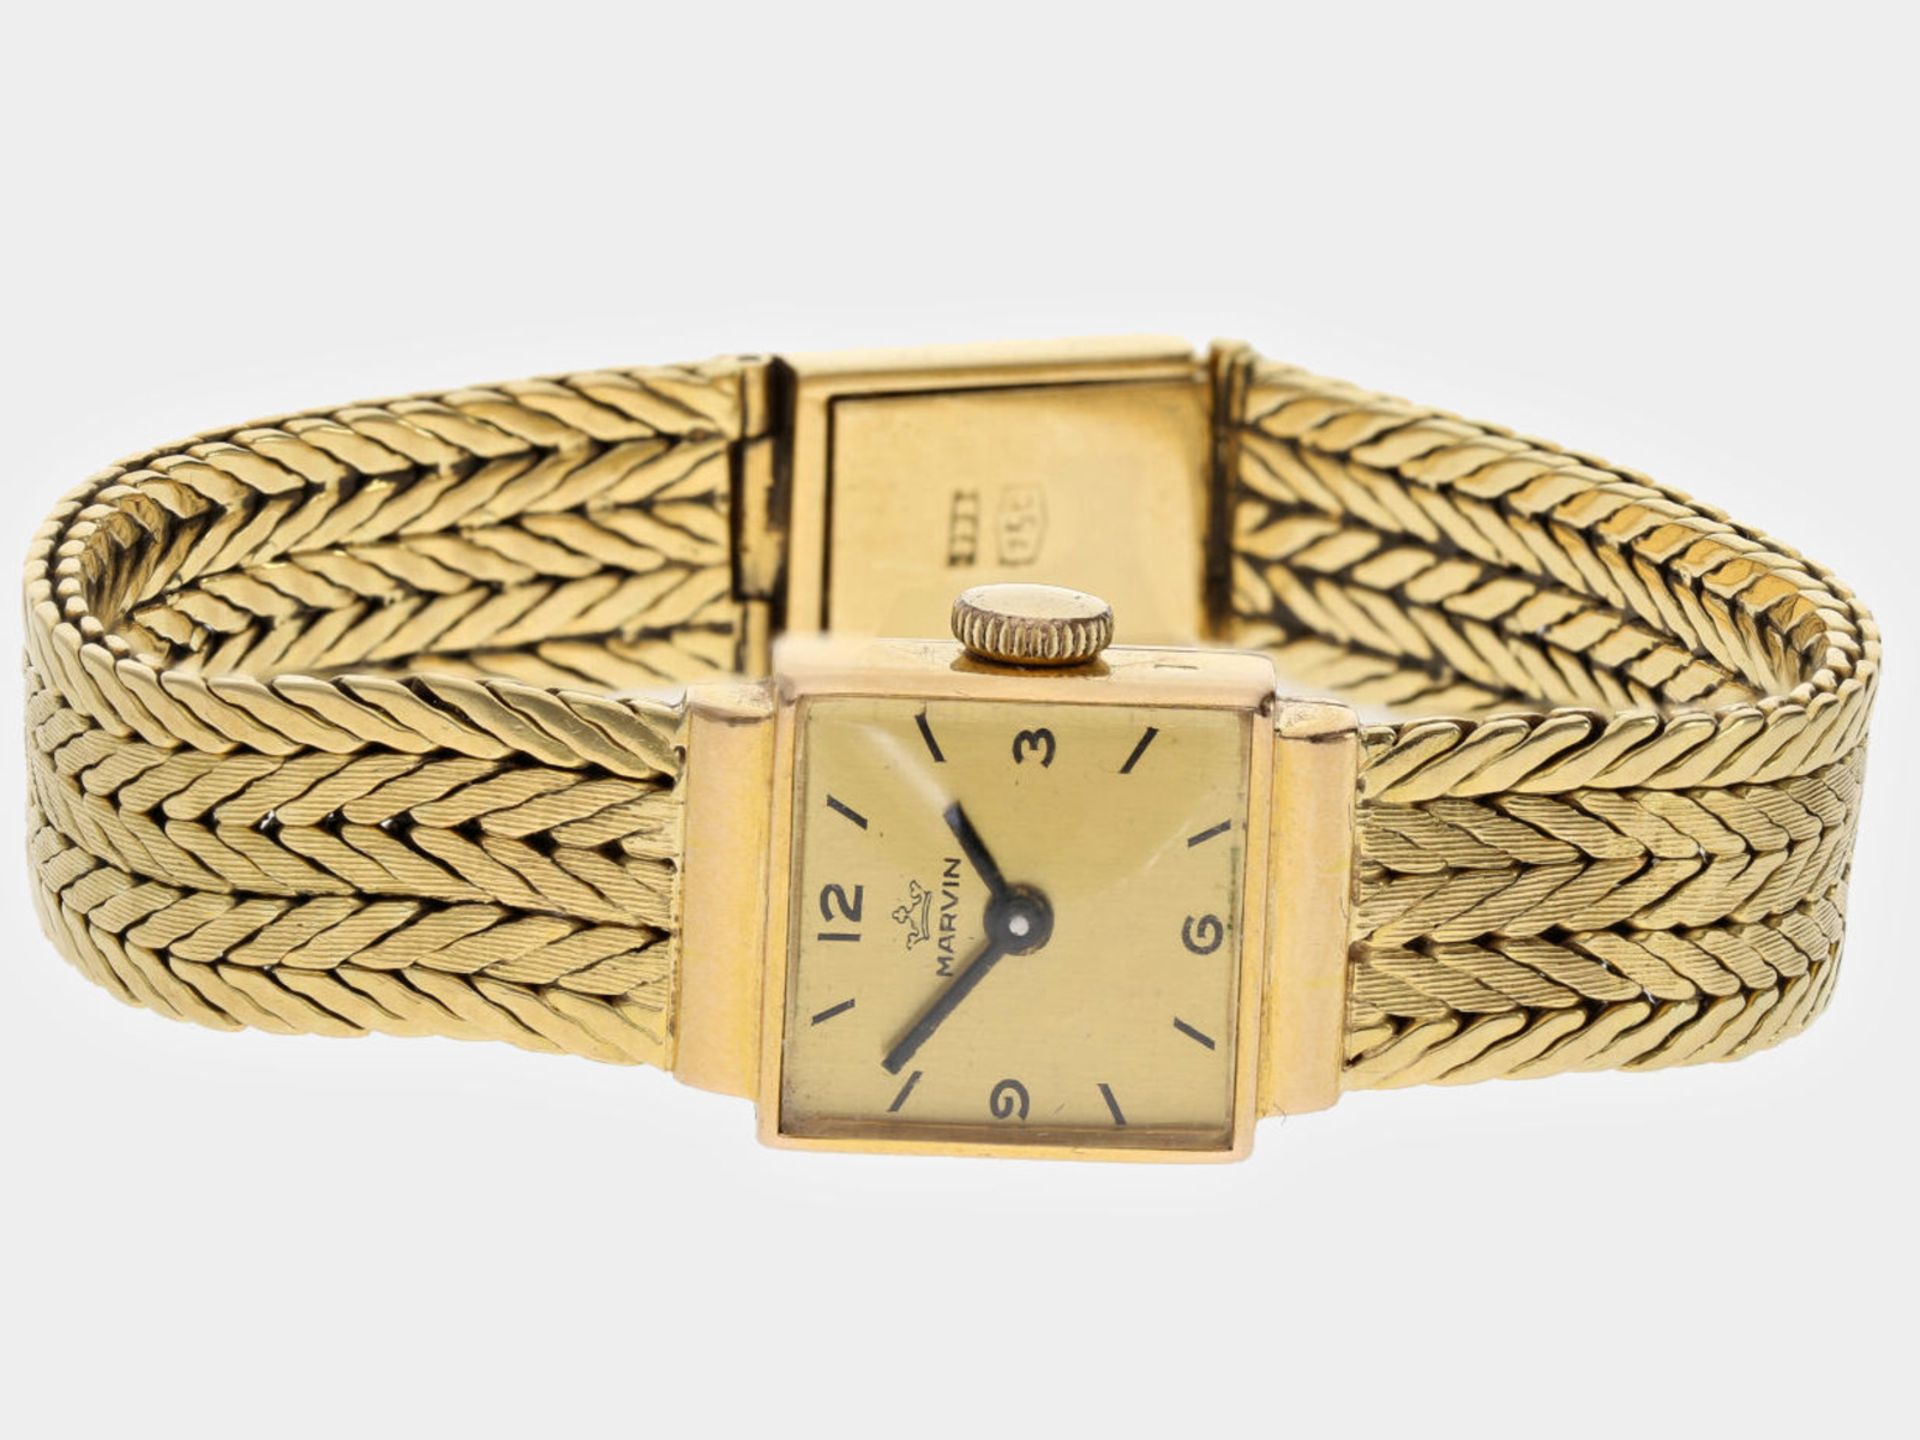 Armbanduhr: vintage Damenuhr aus 18K Gelbgold, Zifferblatt signiert "Marvin"